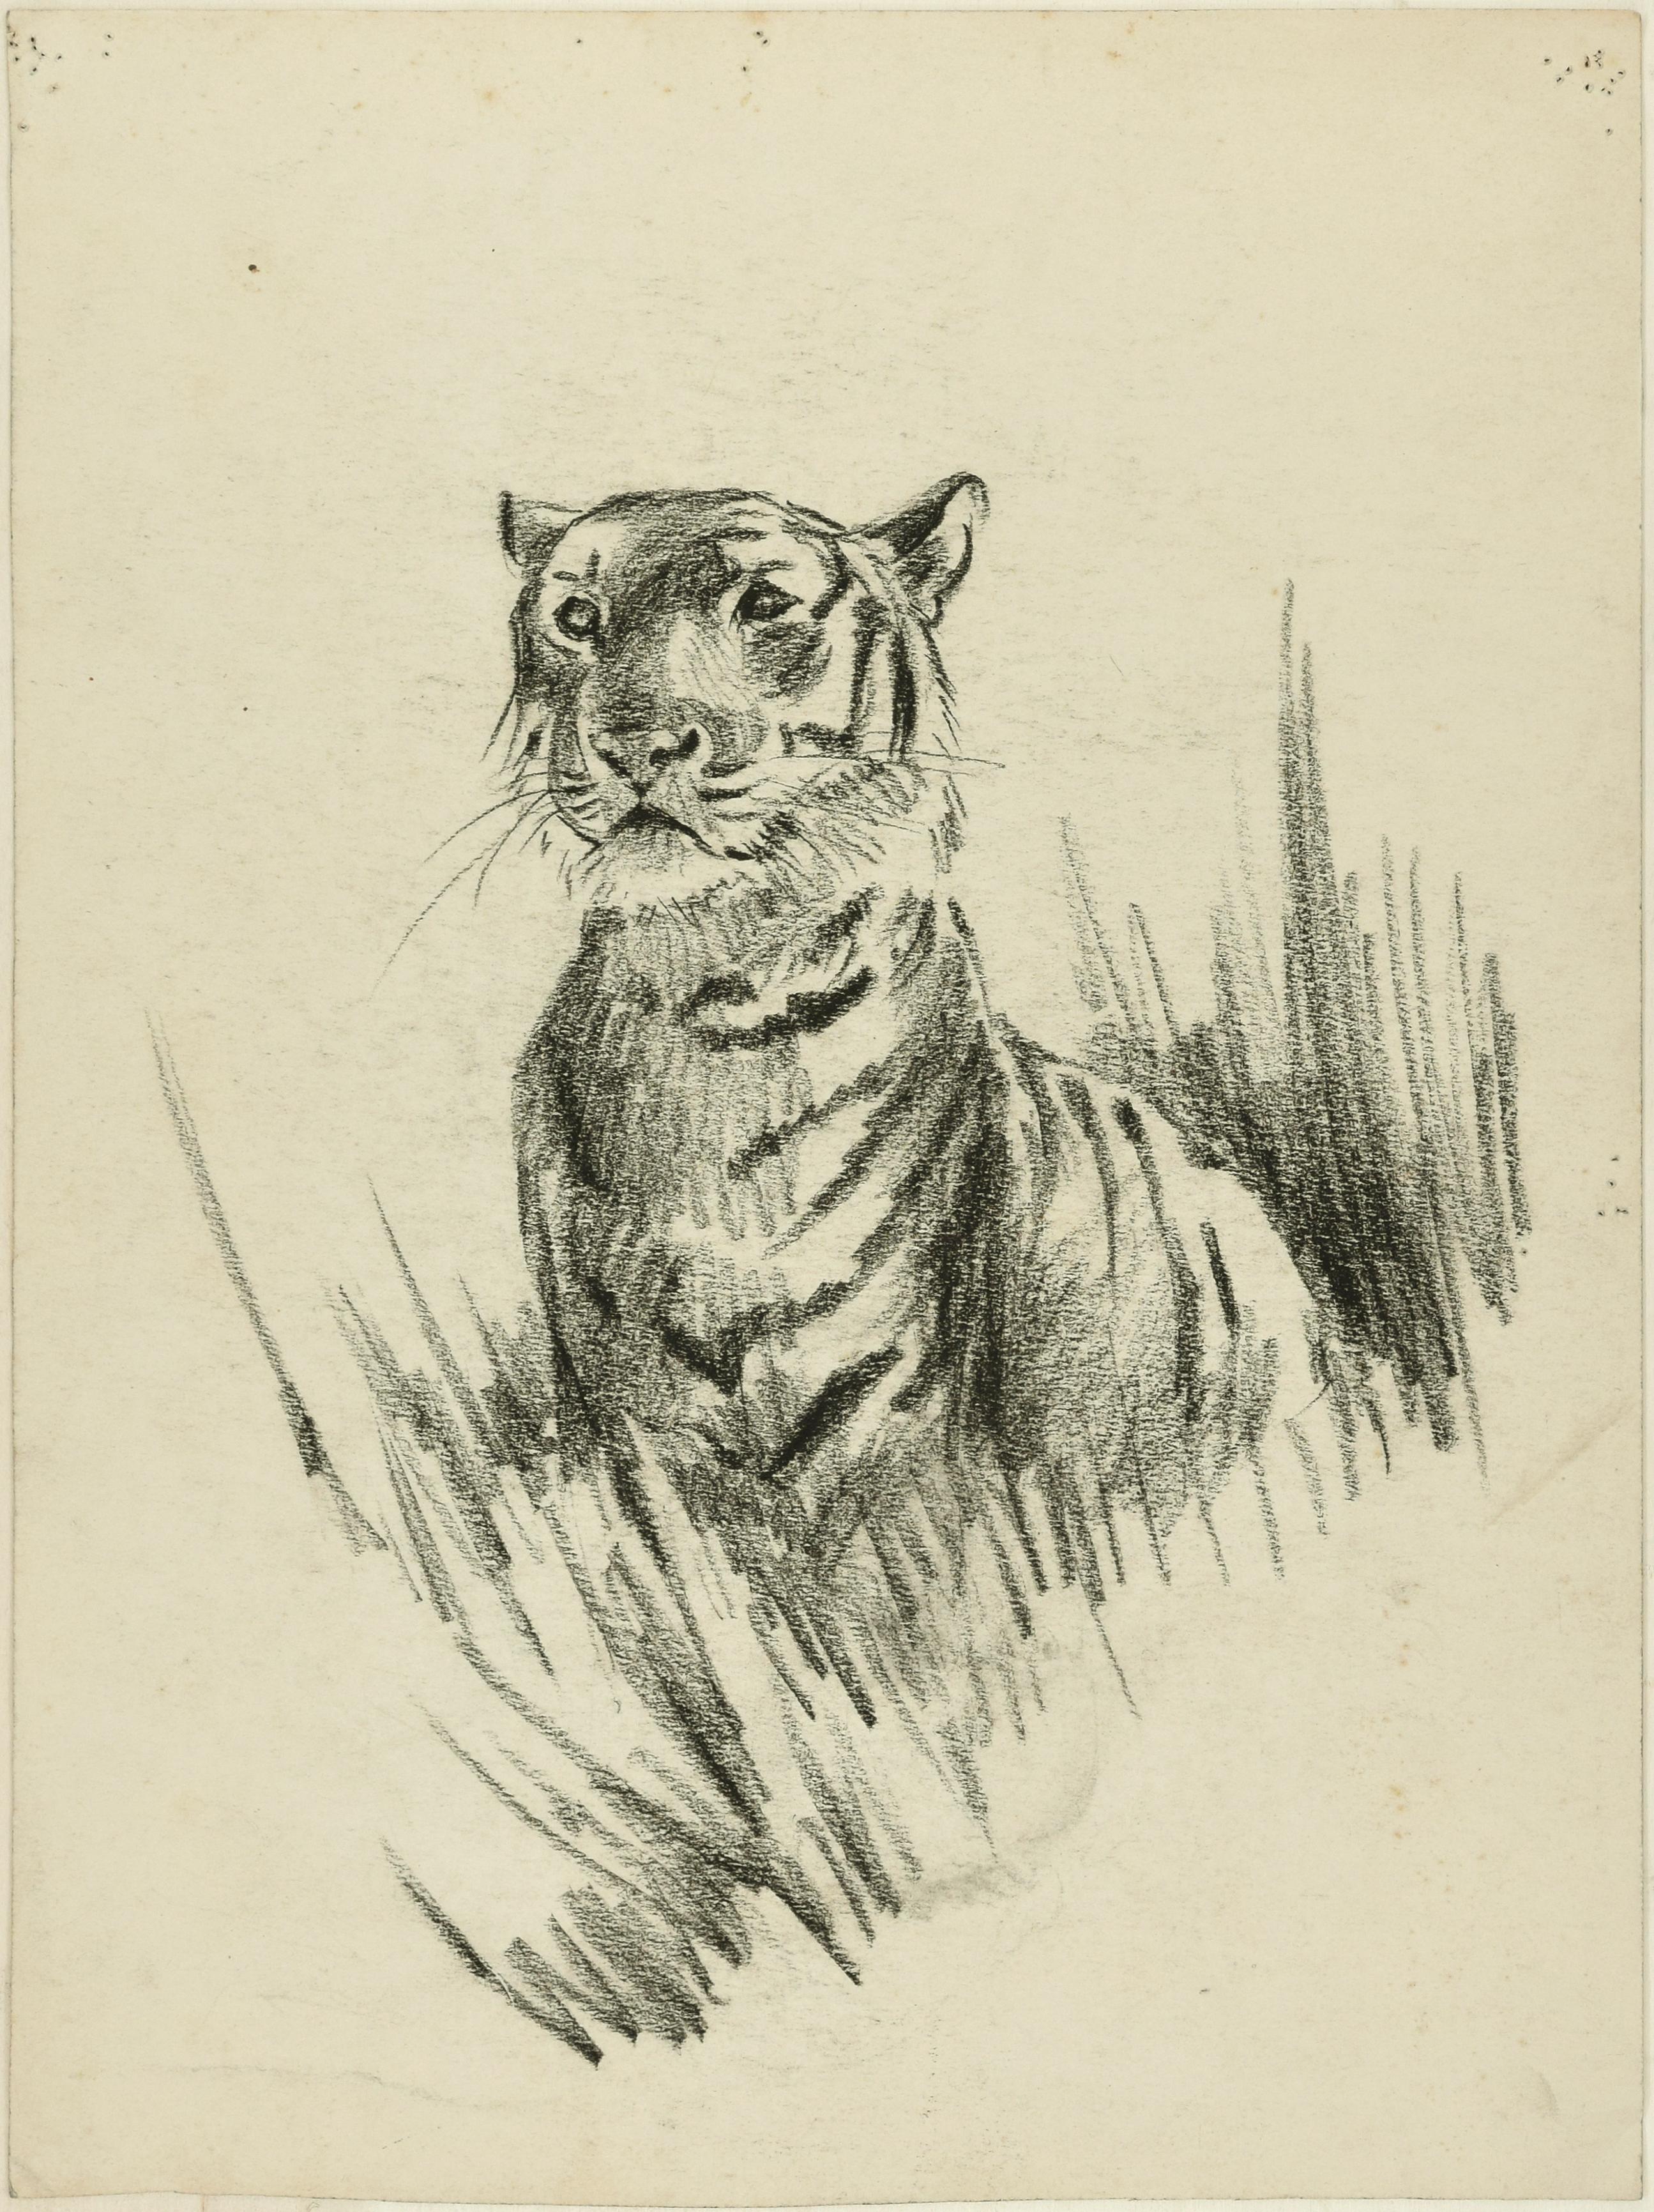 Tête de lion et de tigre - dessin original au crayon par Willy Lorenz - années 1950 - Art de Wilhelm Lorenz